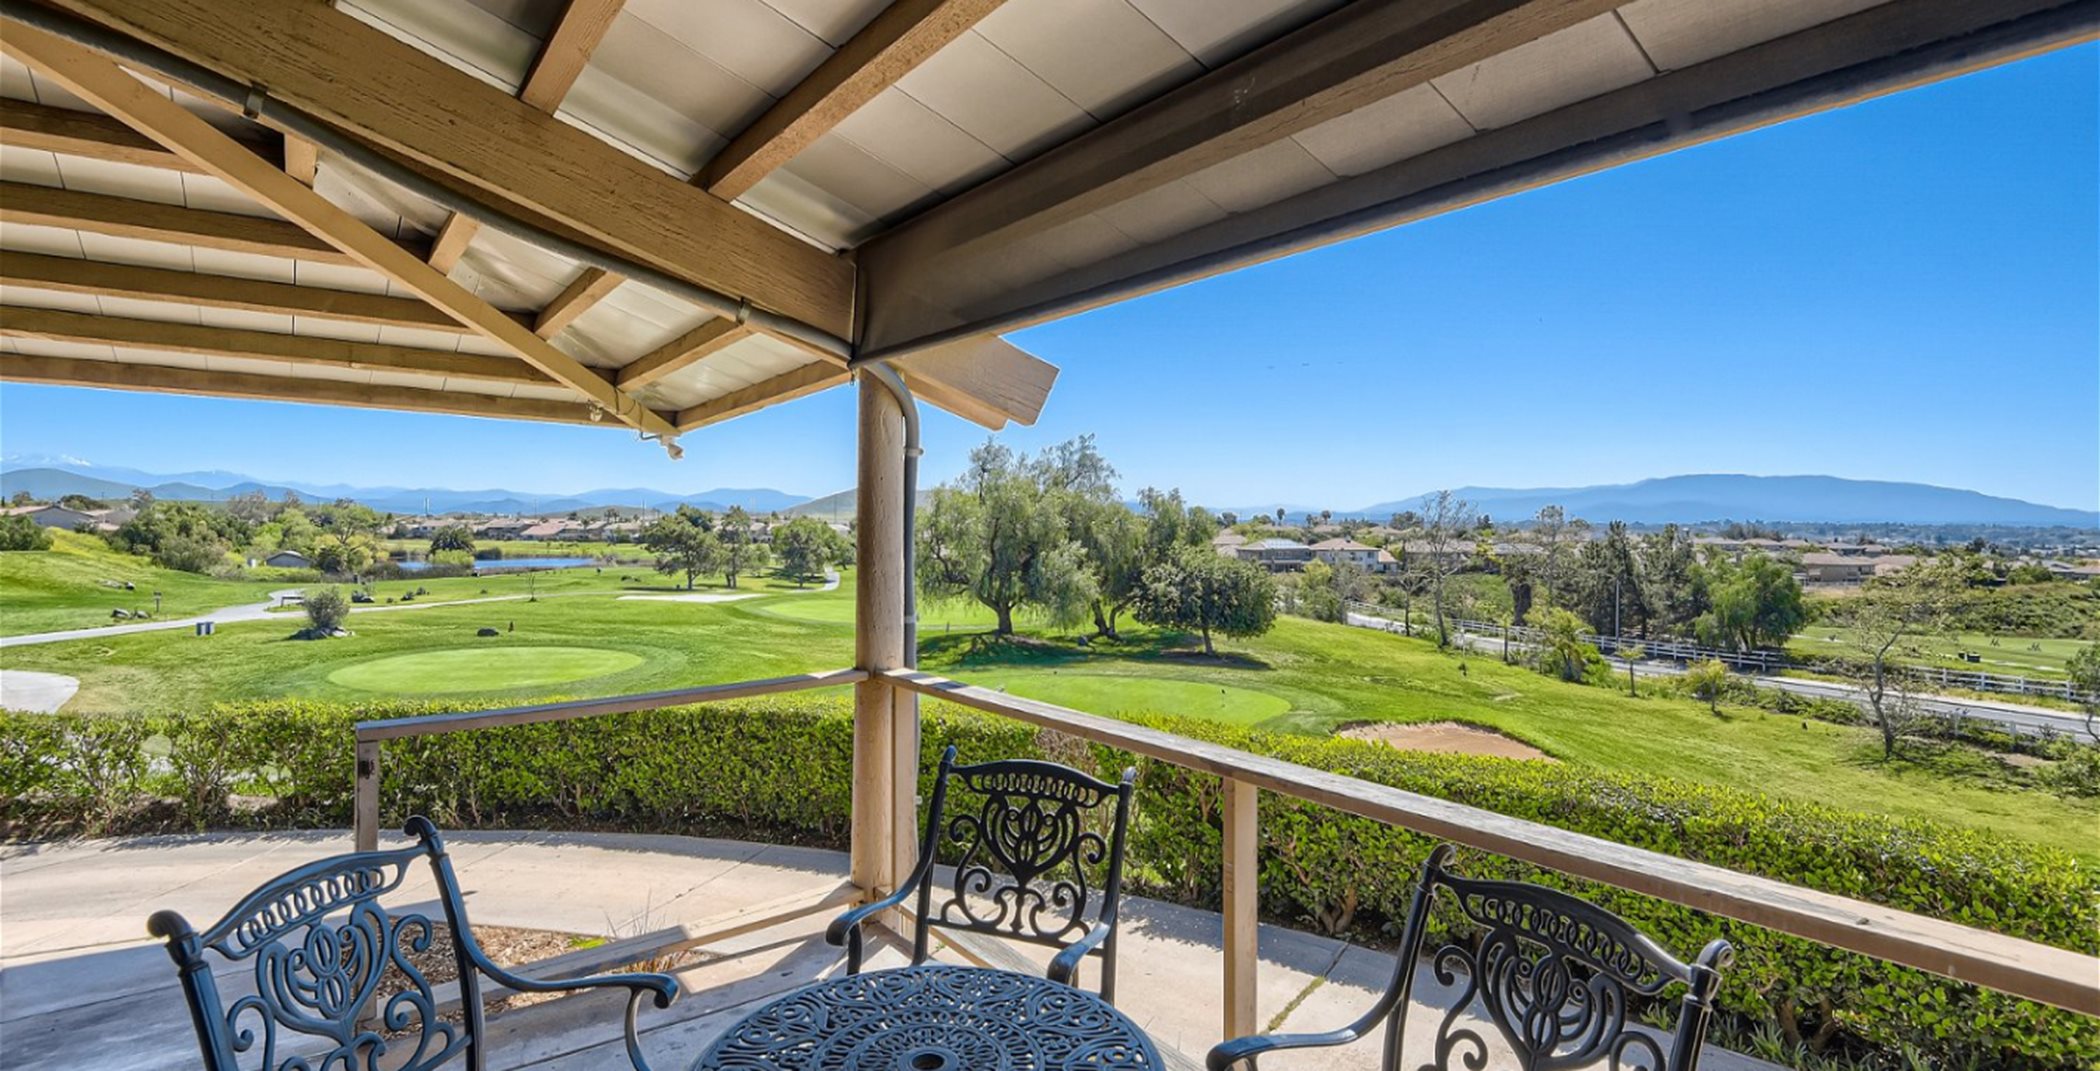 A patio at the Rancho California Golf Club